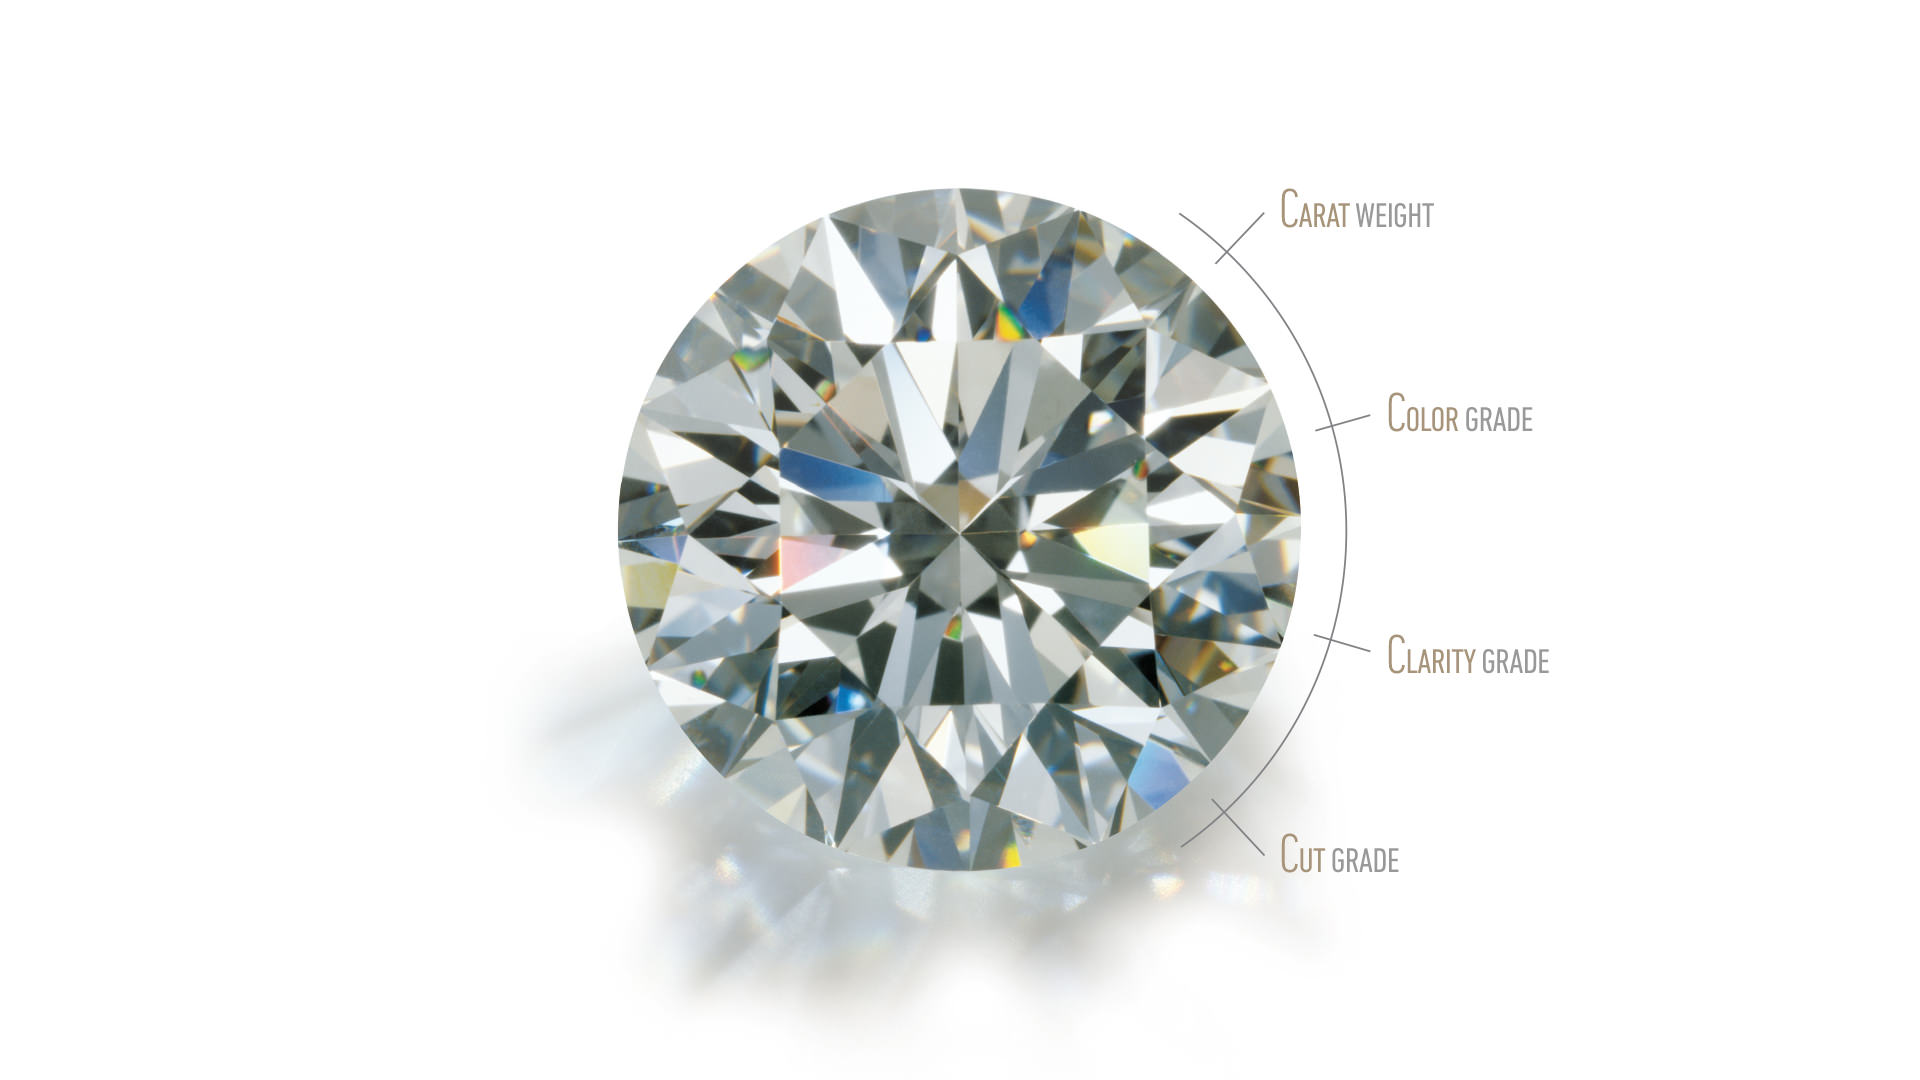 对圆形明亮式切工钻石进行图形叠置，以此来说明 4C 标准（颜色、切工、净度和克拉重量）。